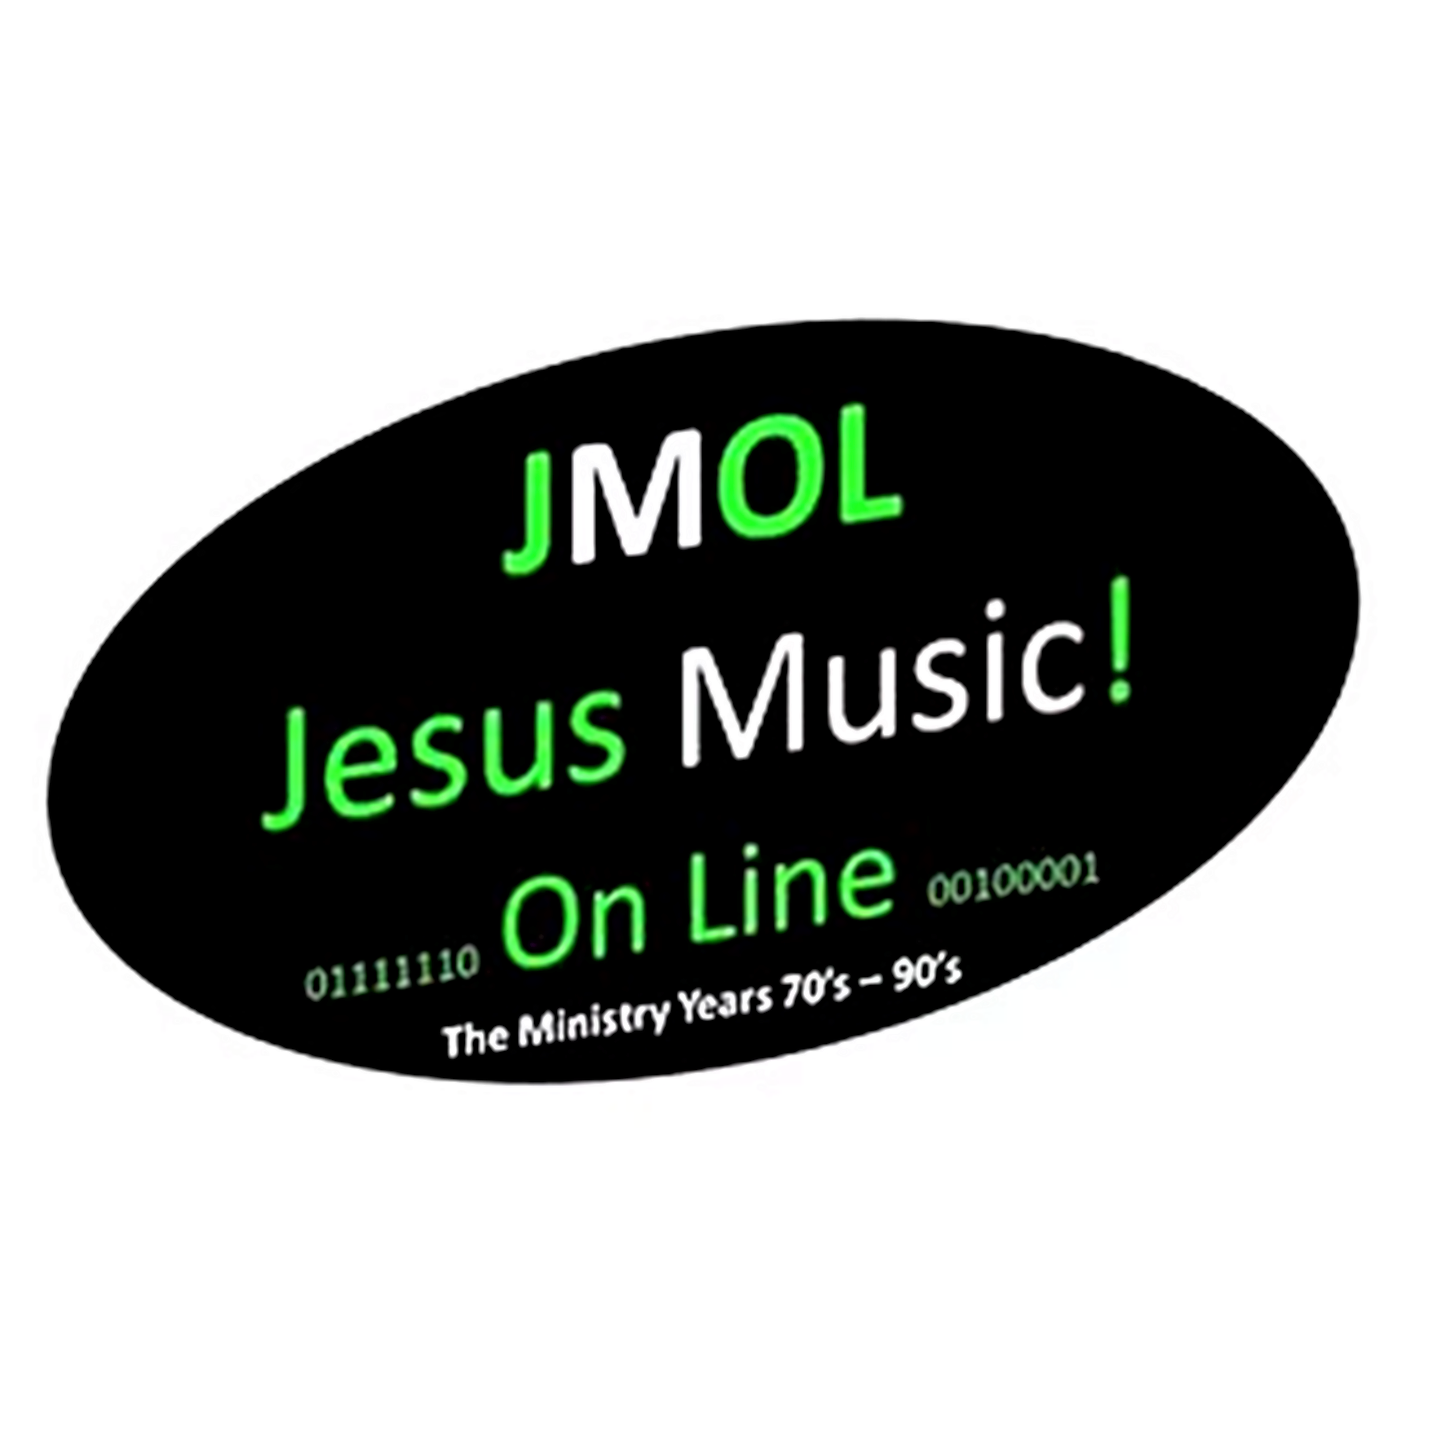 Art for JMOL ID 3 by JMOL